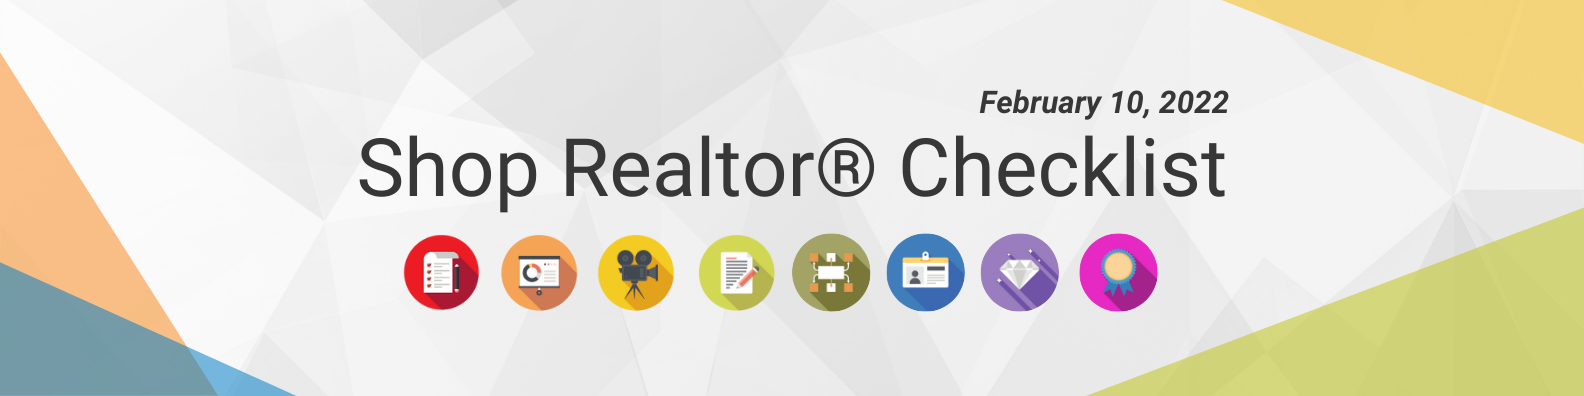 Shop Realtor® Checklist, Feb 10